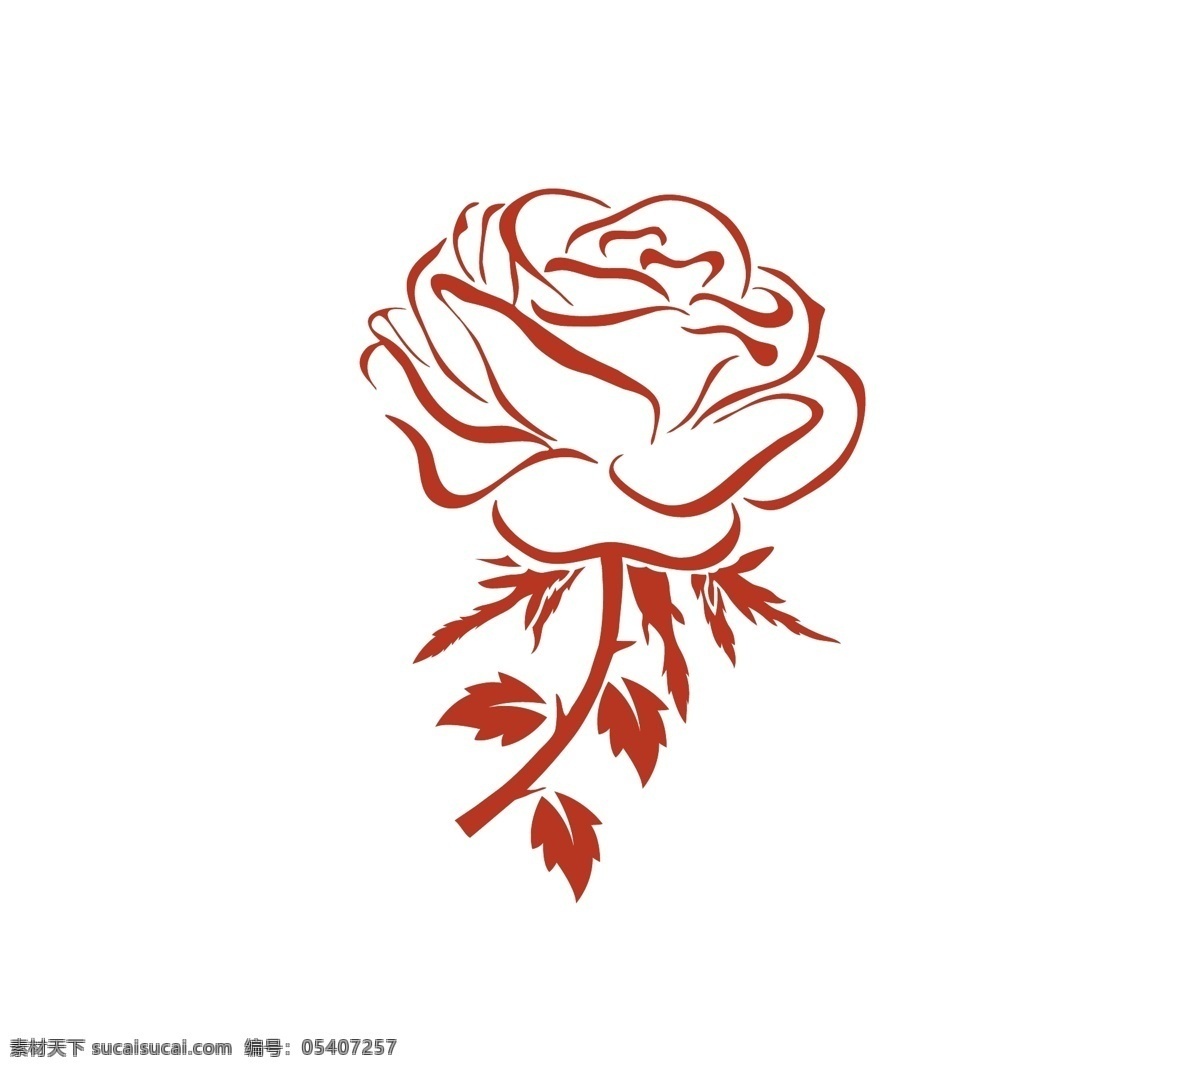 矢量花朵图片 矢量月季 手绘月季 线稿月季 单色月季 矢量玫瑰 手绘玫瑰 线稿玫瑰 单色玫瑰 生物世界 花草